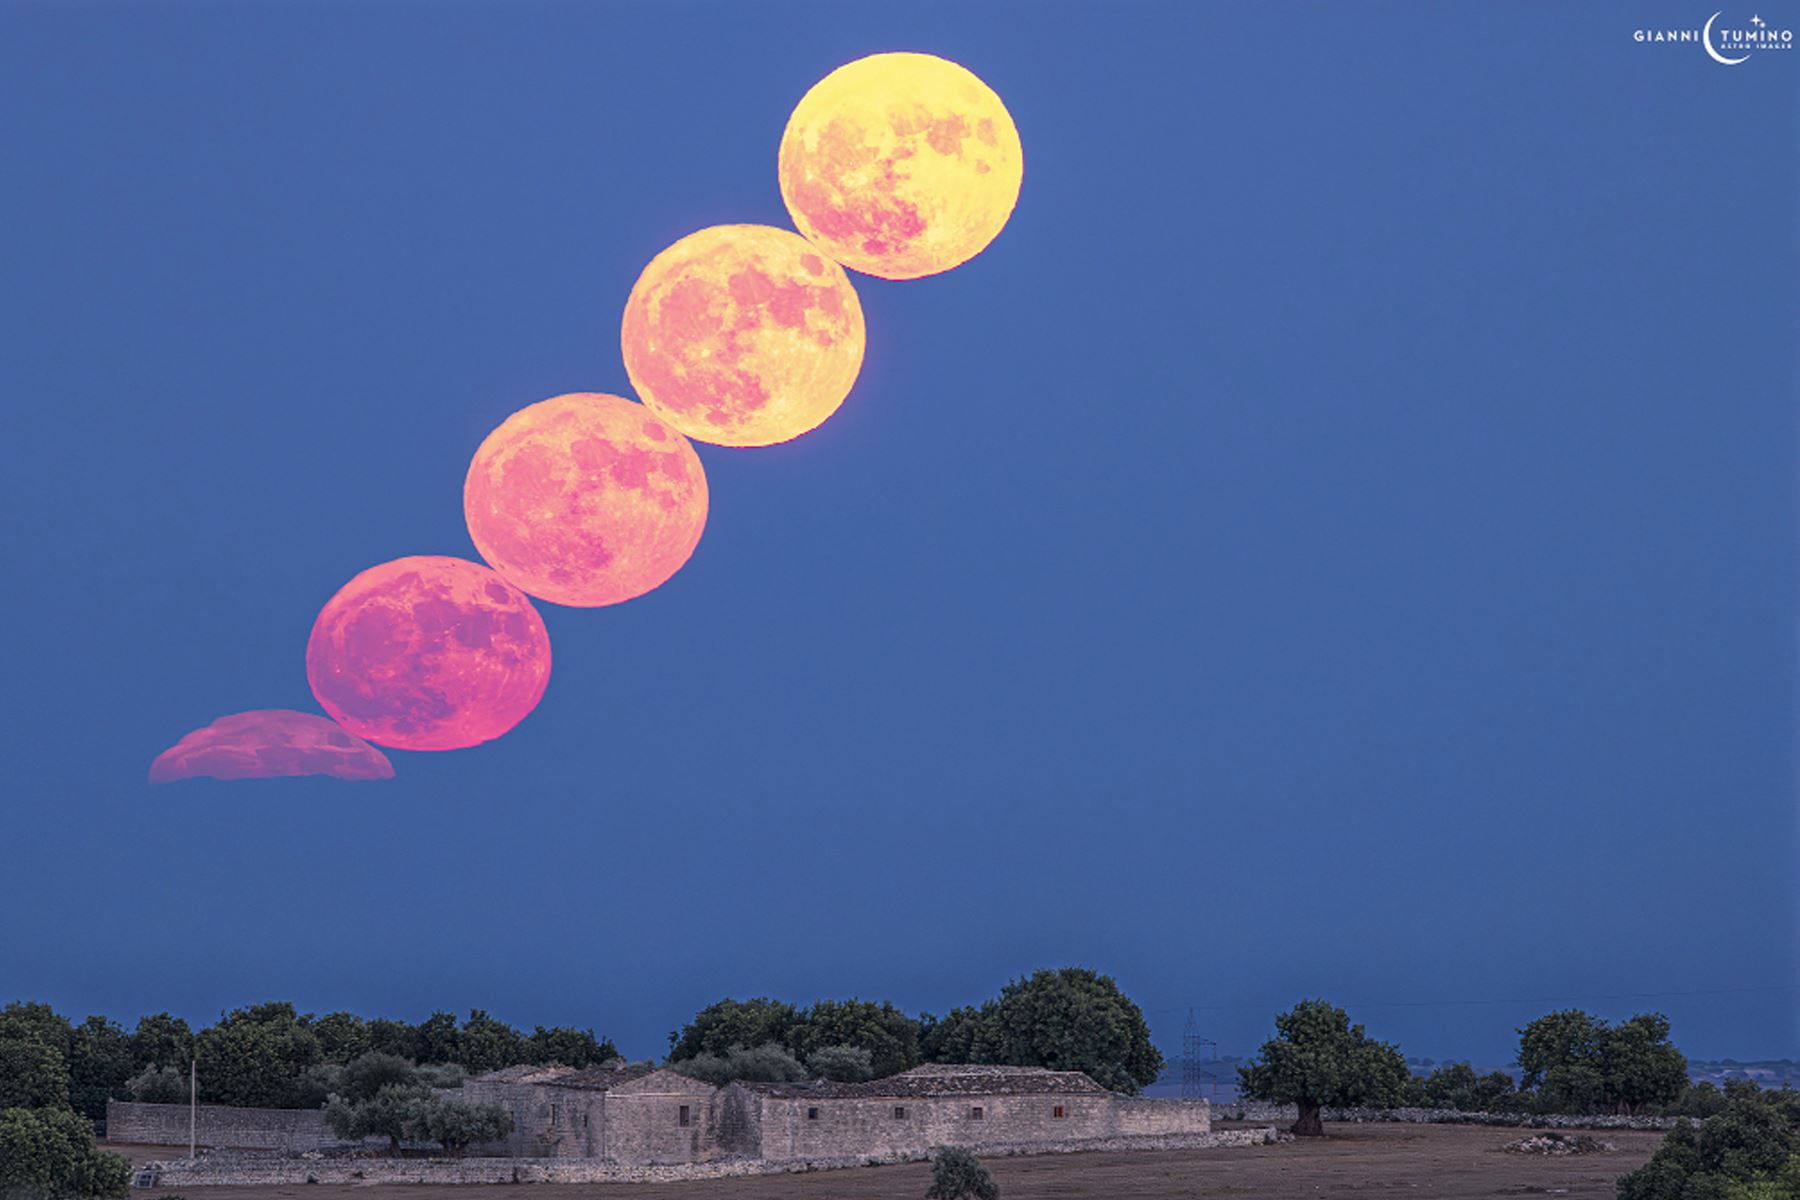 Esta Luna llena fue la segunda en agosto, por lo que es conocida como una Luna azul. Foto: Gianni Tumino/NASA